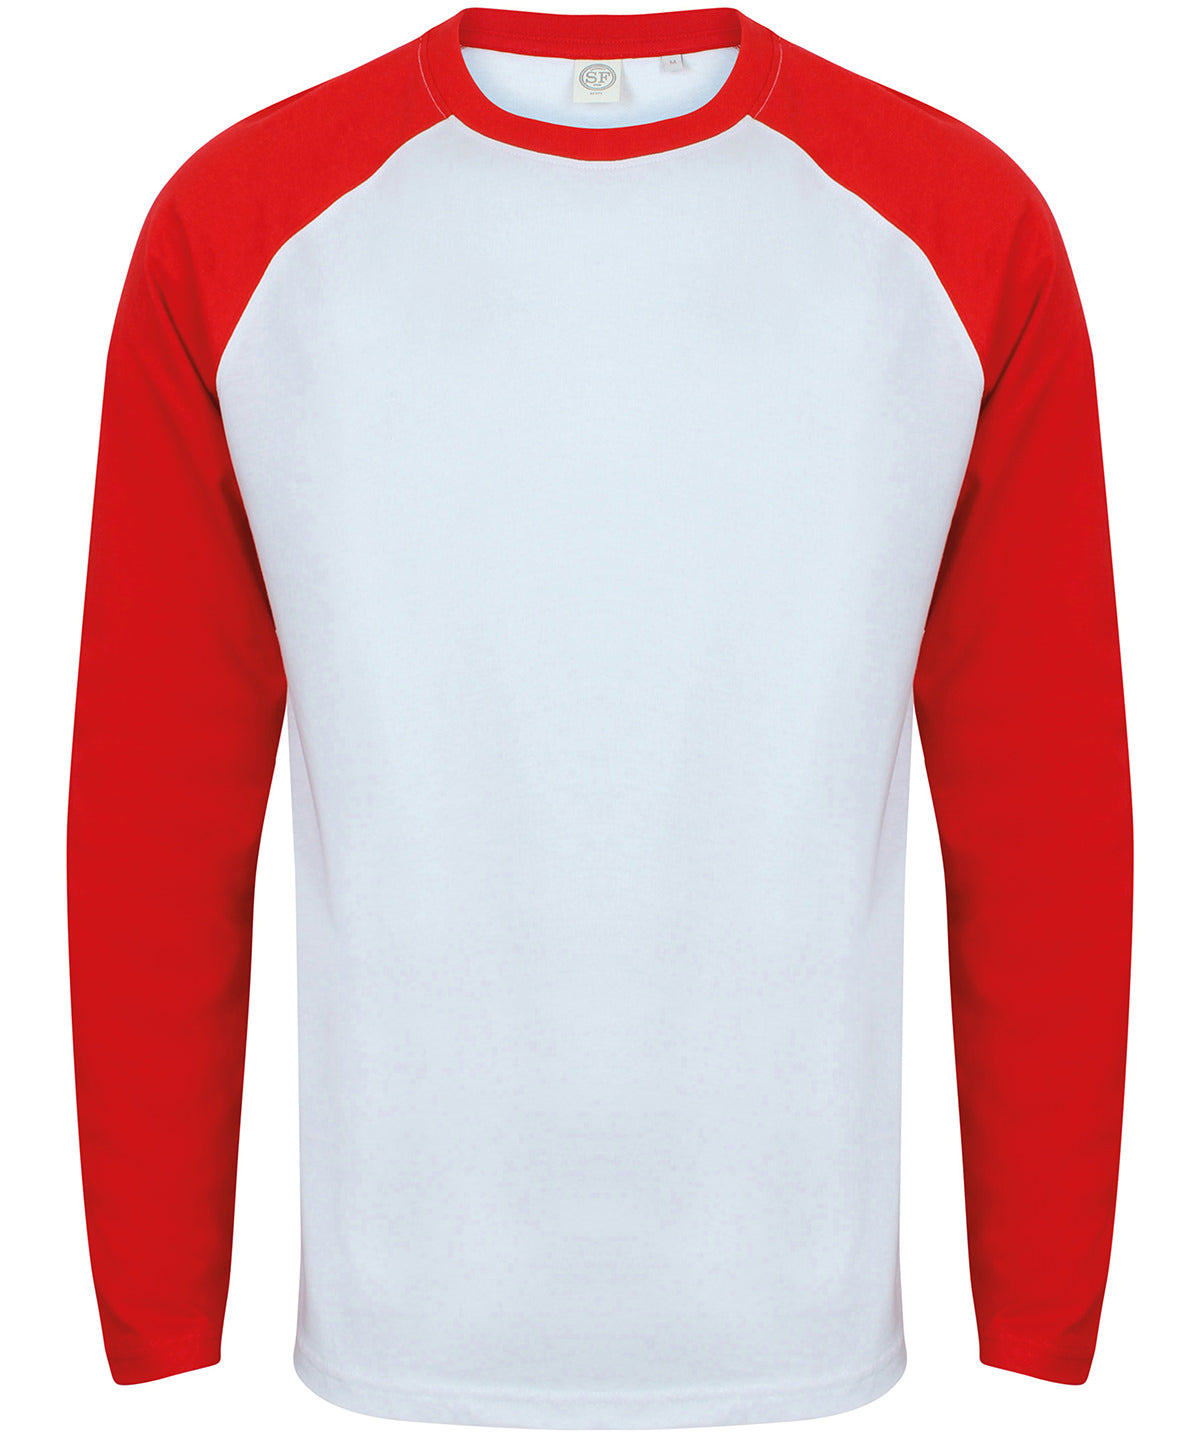 Stuttermabolir - Long Sleeve Baseball T-shirt